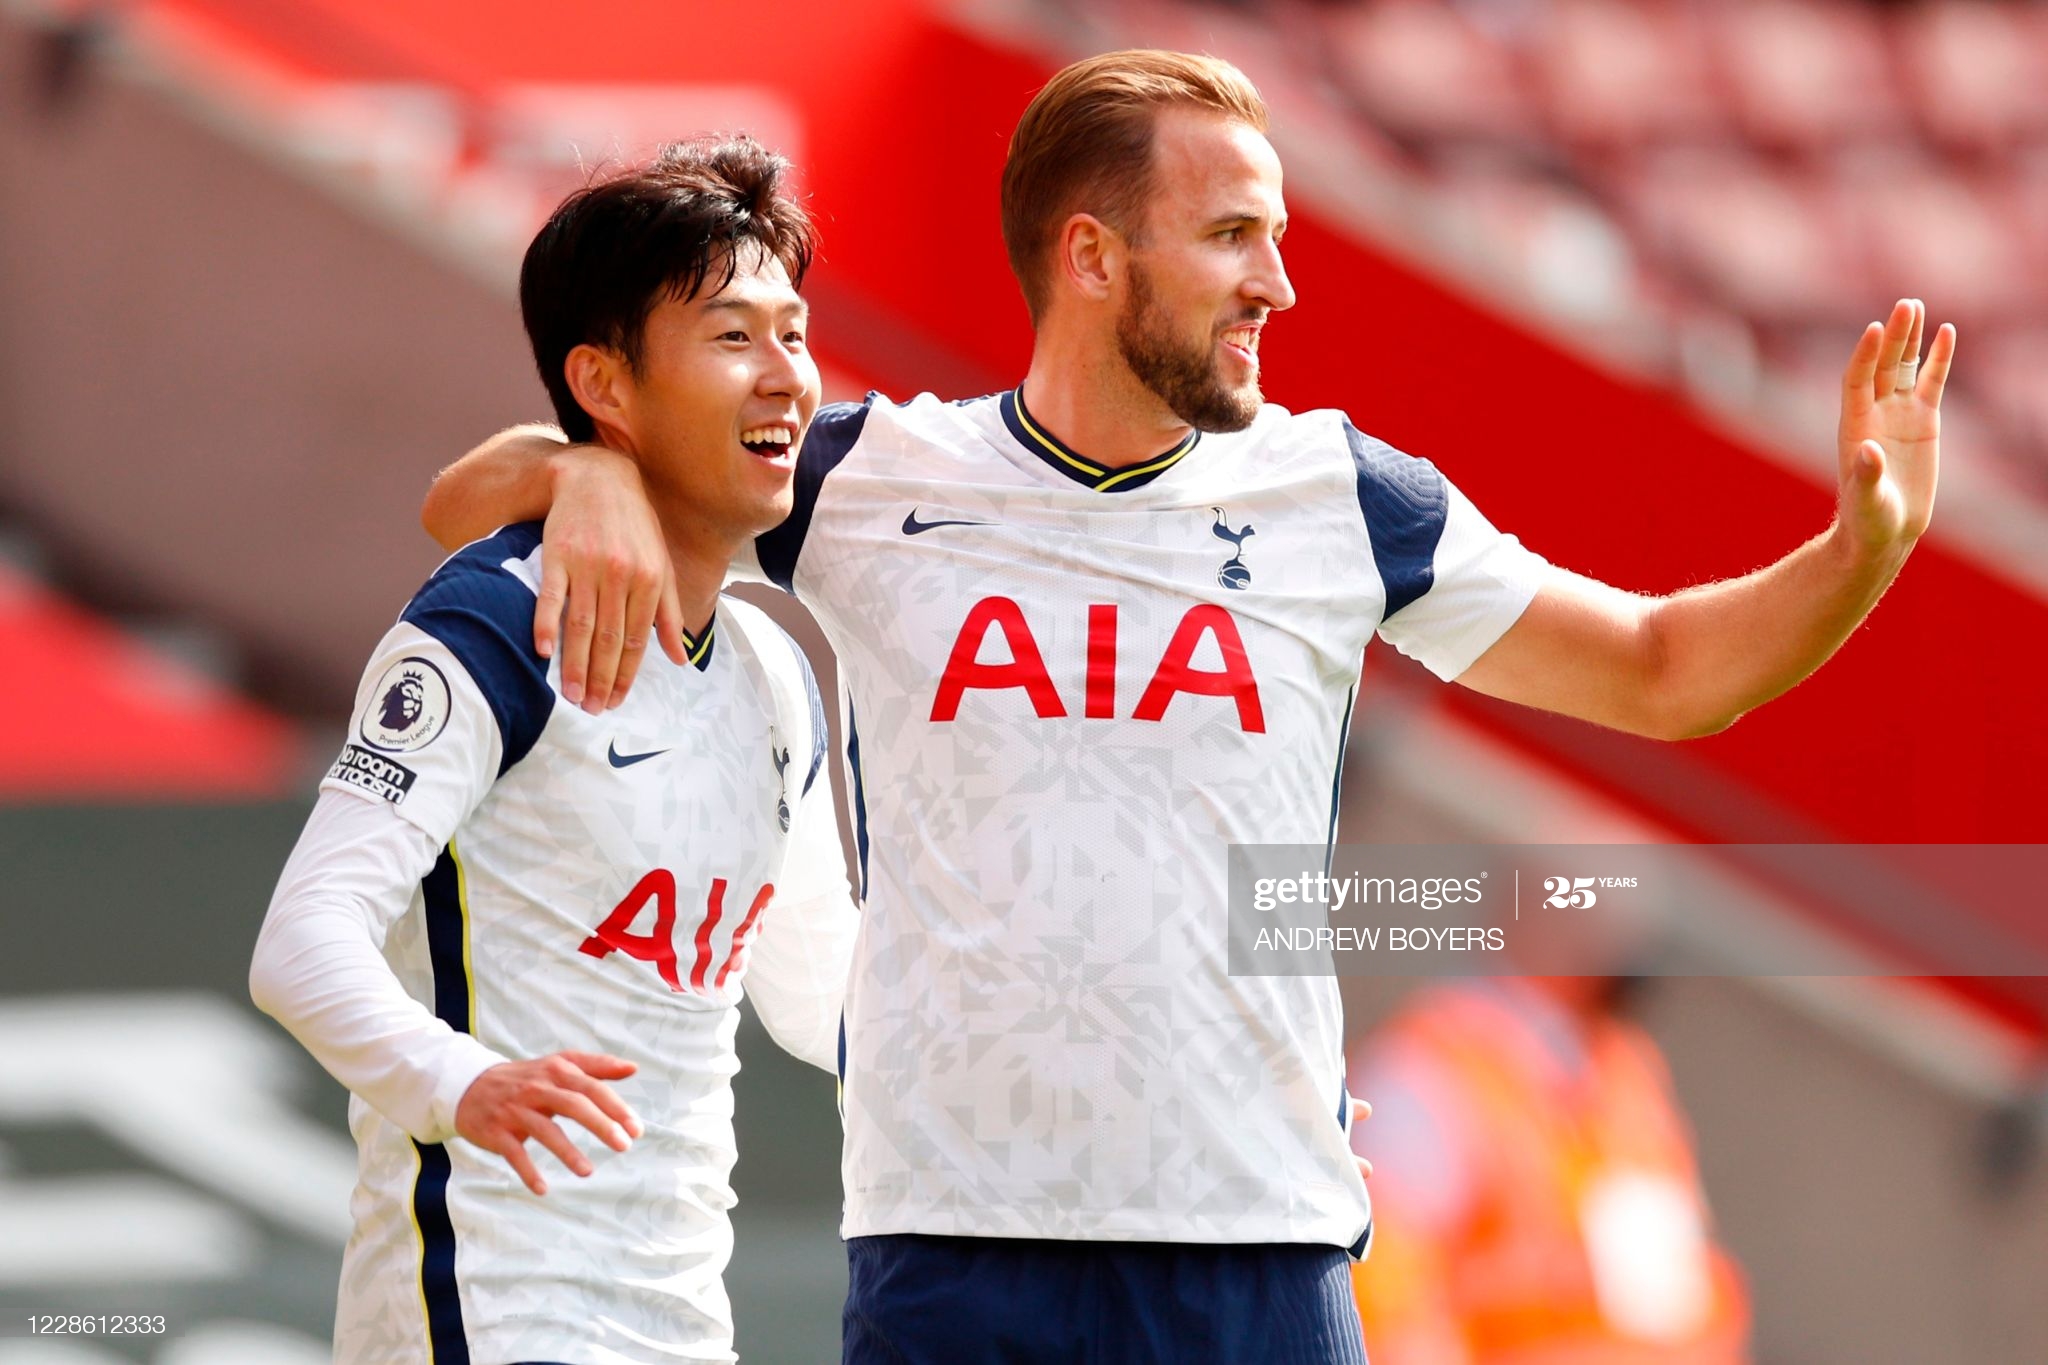 Tottenham – West Ham : Kane, Son, titulaires, Bale sur le banc, les compos officielles